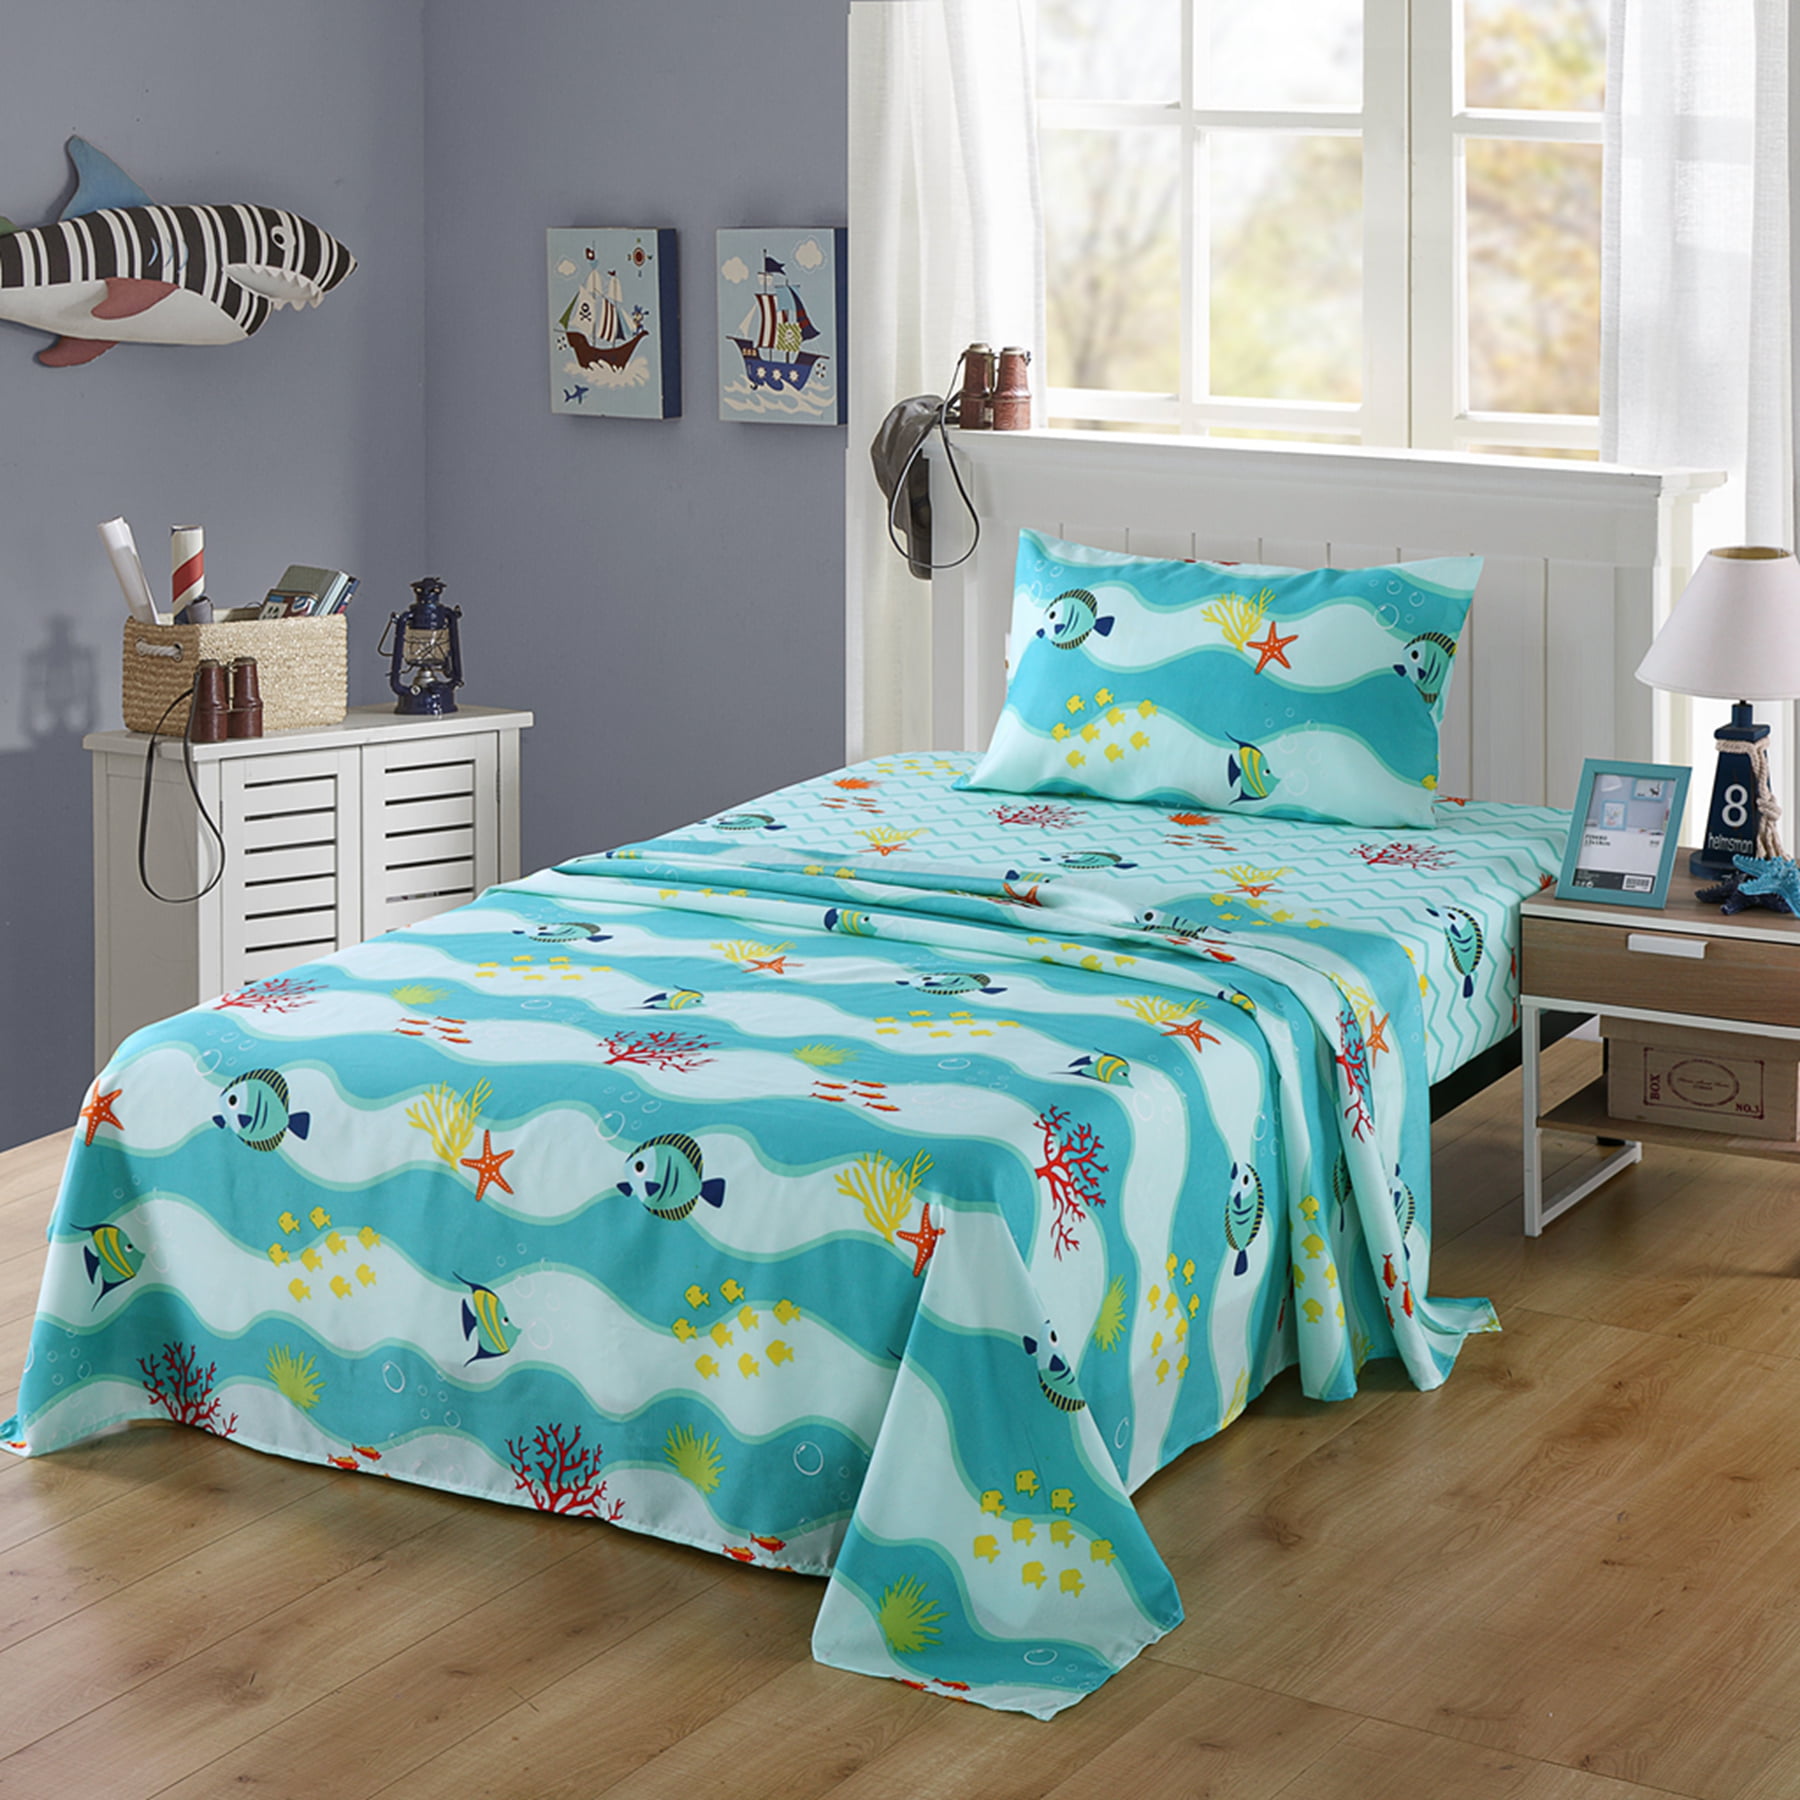 Girls Comforter Set Twin Bed Ultra Soft Microfiber Mattress Sheets Kids Bedding 